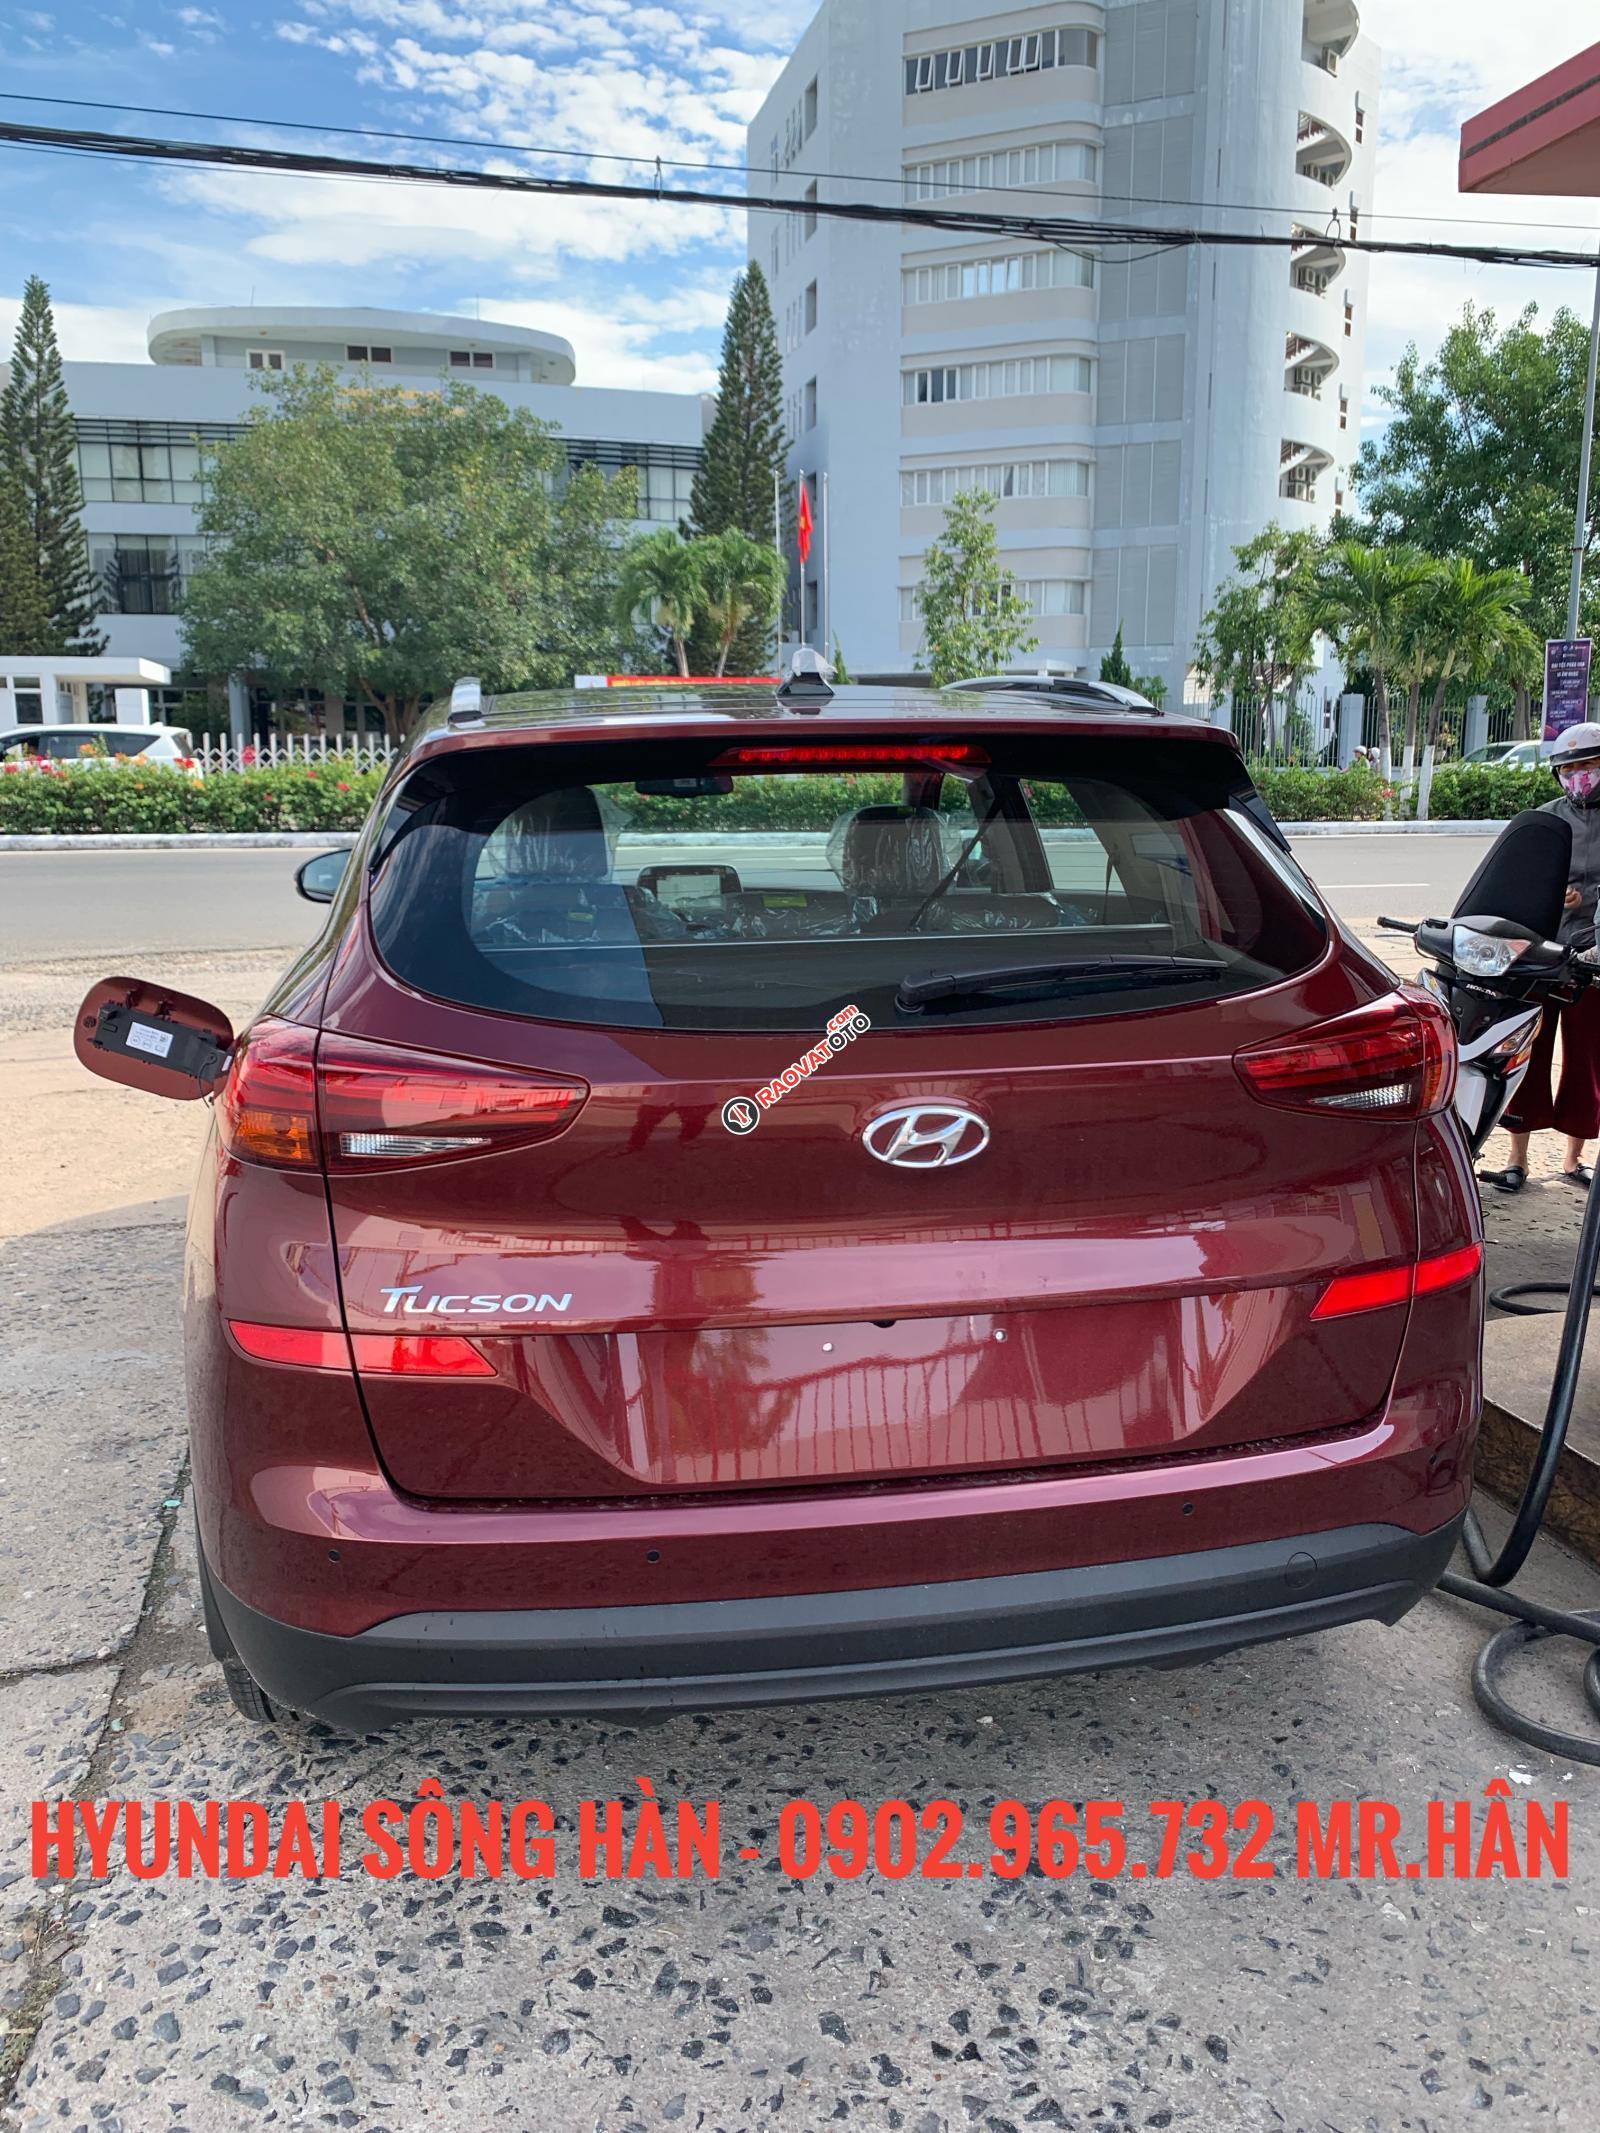 Bán xe Hyundai Tucson đời 2019, màu đỏ - giao ngay, hỗ trợ vay vốn 80% LH: 0902.965.732 Hữu Hân-5